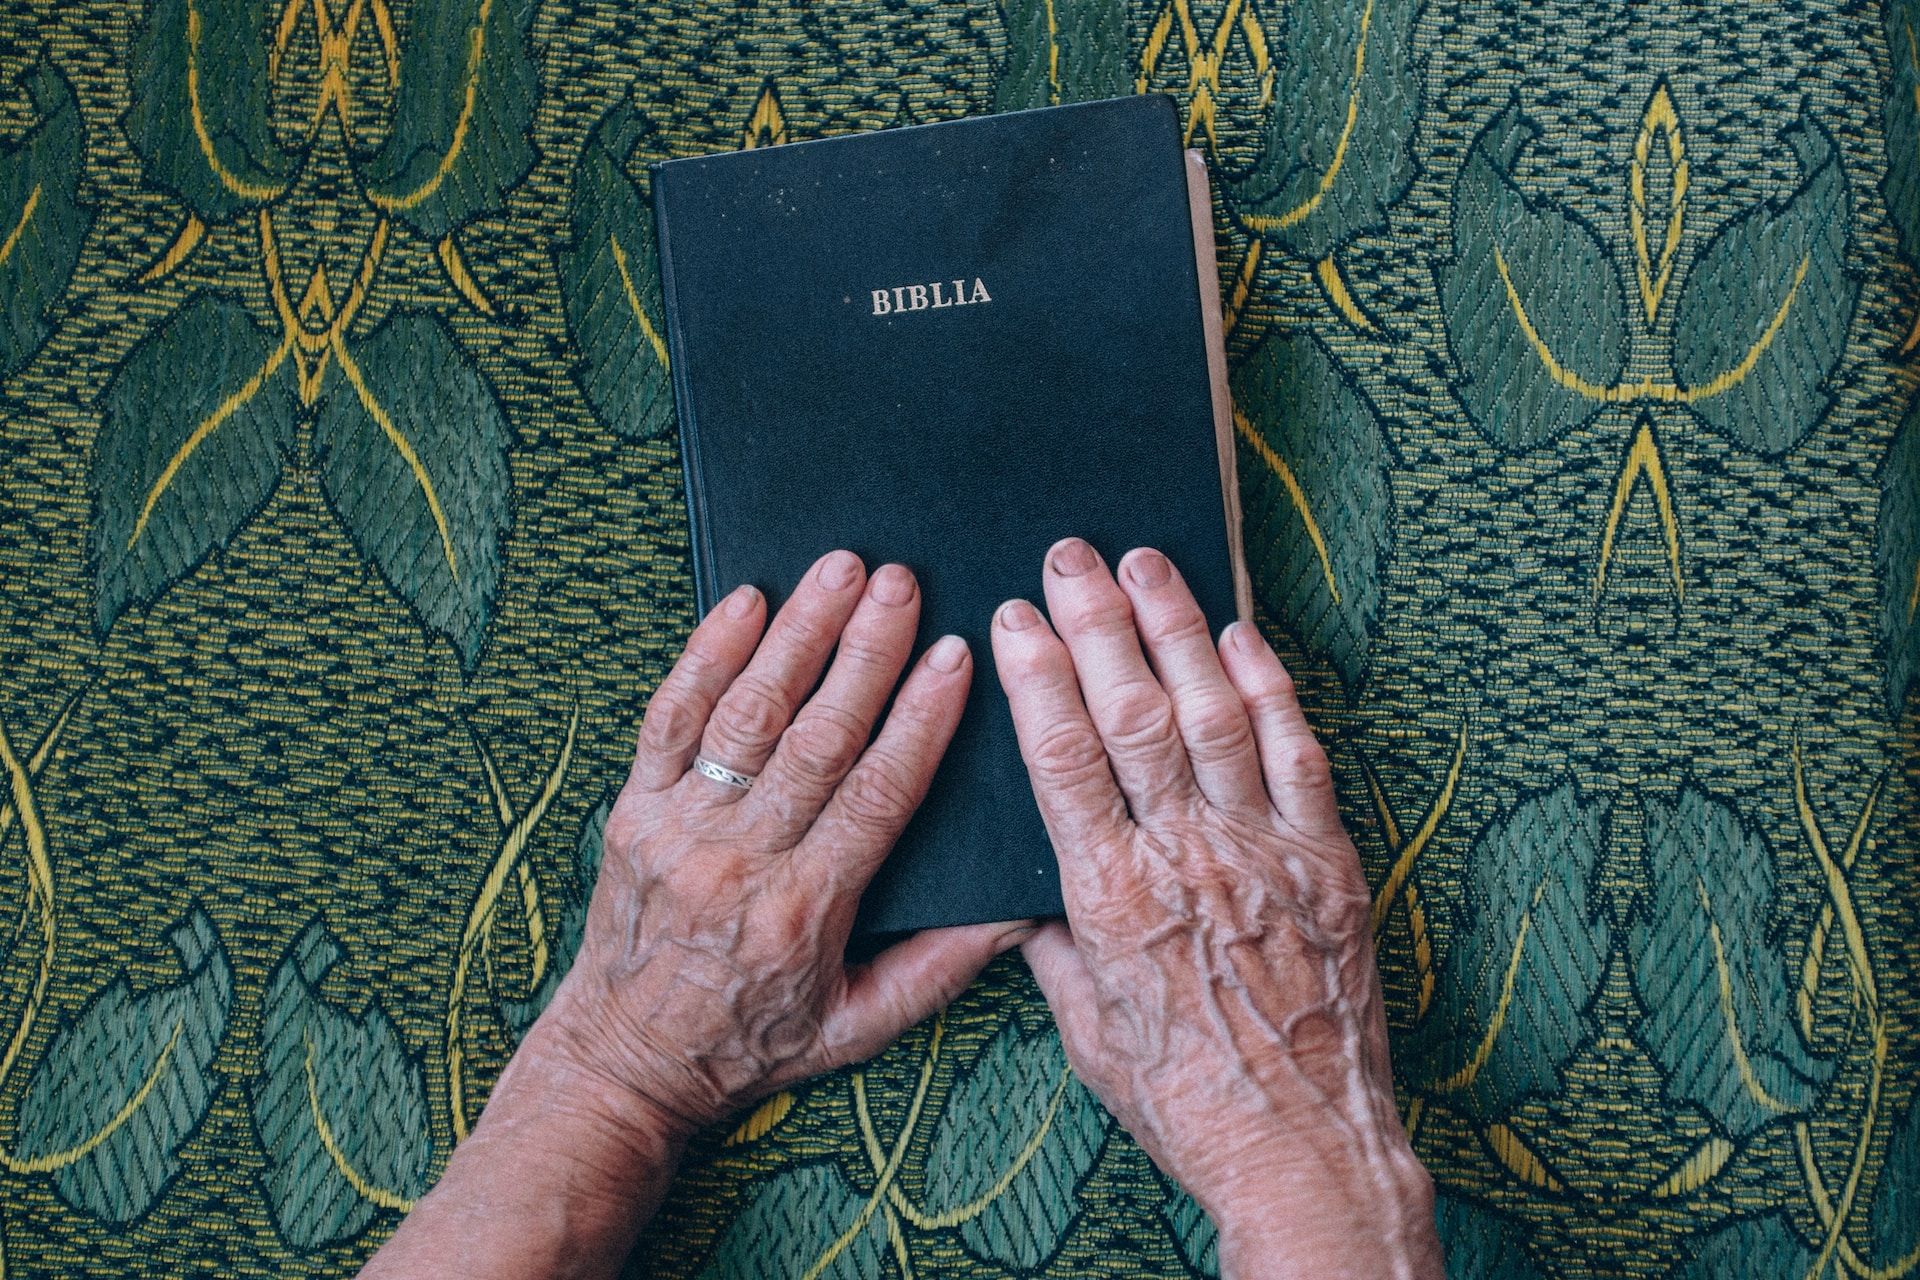 les mains d'une femme âgée posées sur une bible fermée - Photo de Raul Petri sur Unsplash